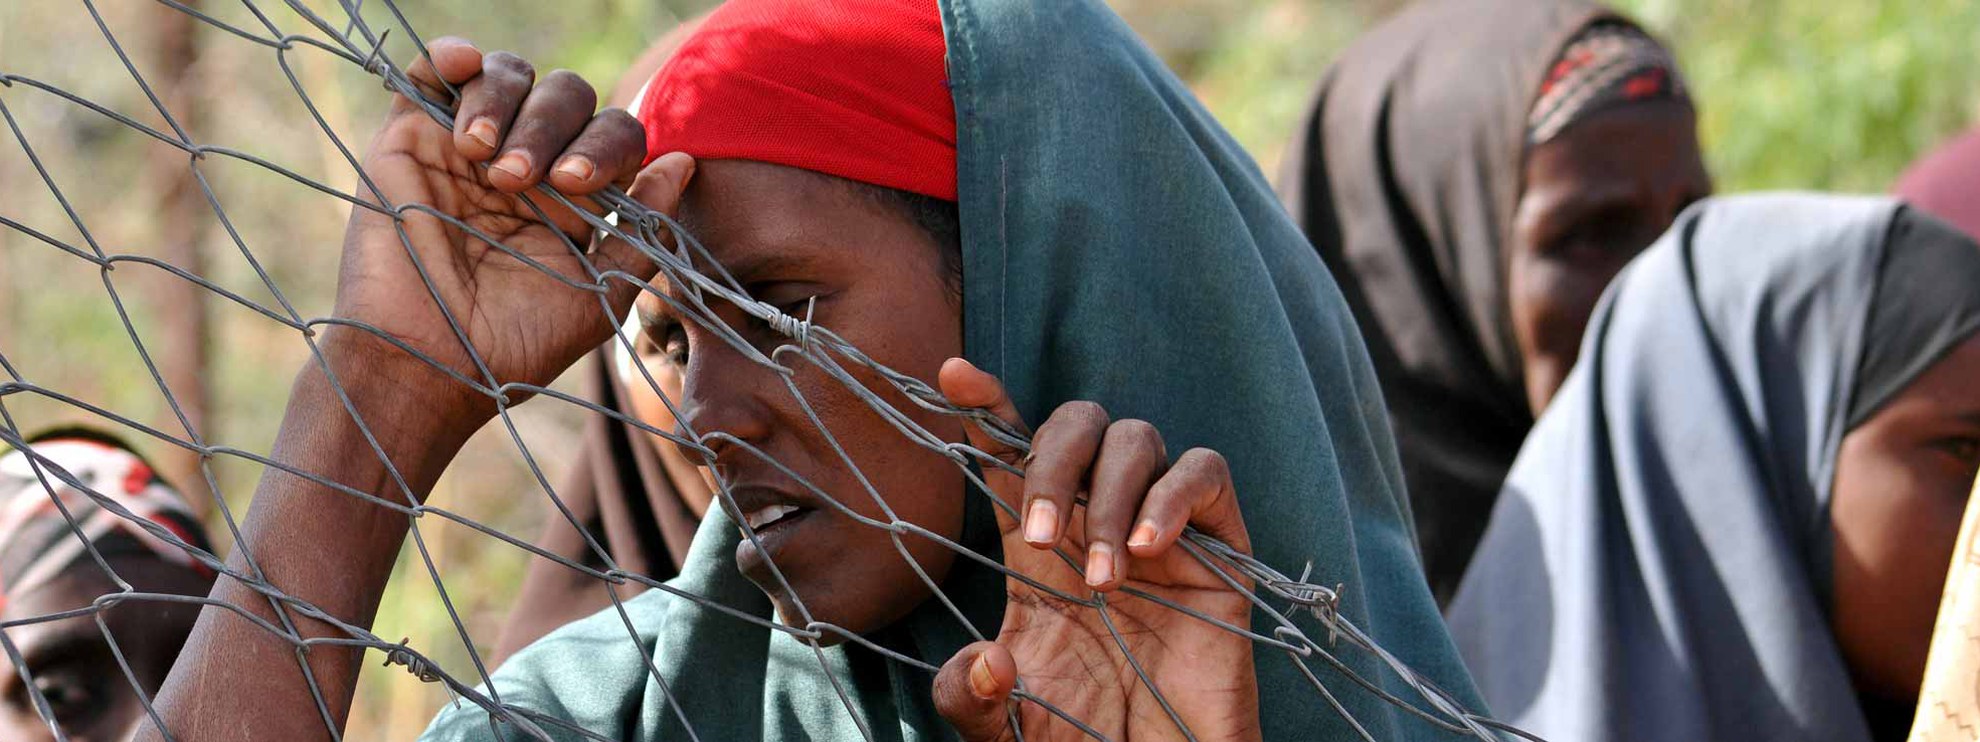 En Afrique, de nombreuses personnes sont en fuite - et restent sur le continent. La plupart des fugitifs et des personnes déplacées vivent dans les pays voisins ou dans les frontières de leur pays d'origine. Souvent dans d'immenses camps de réfugiés, comme cette femme à Dadaab, un camp au Kenya, où vivent plus de 200 000 personnes. © hikrcn / shutterstock